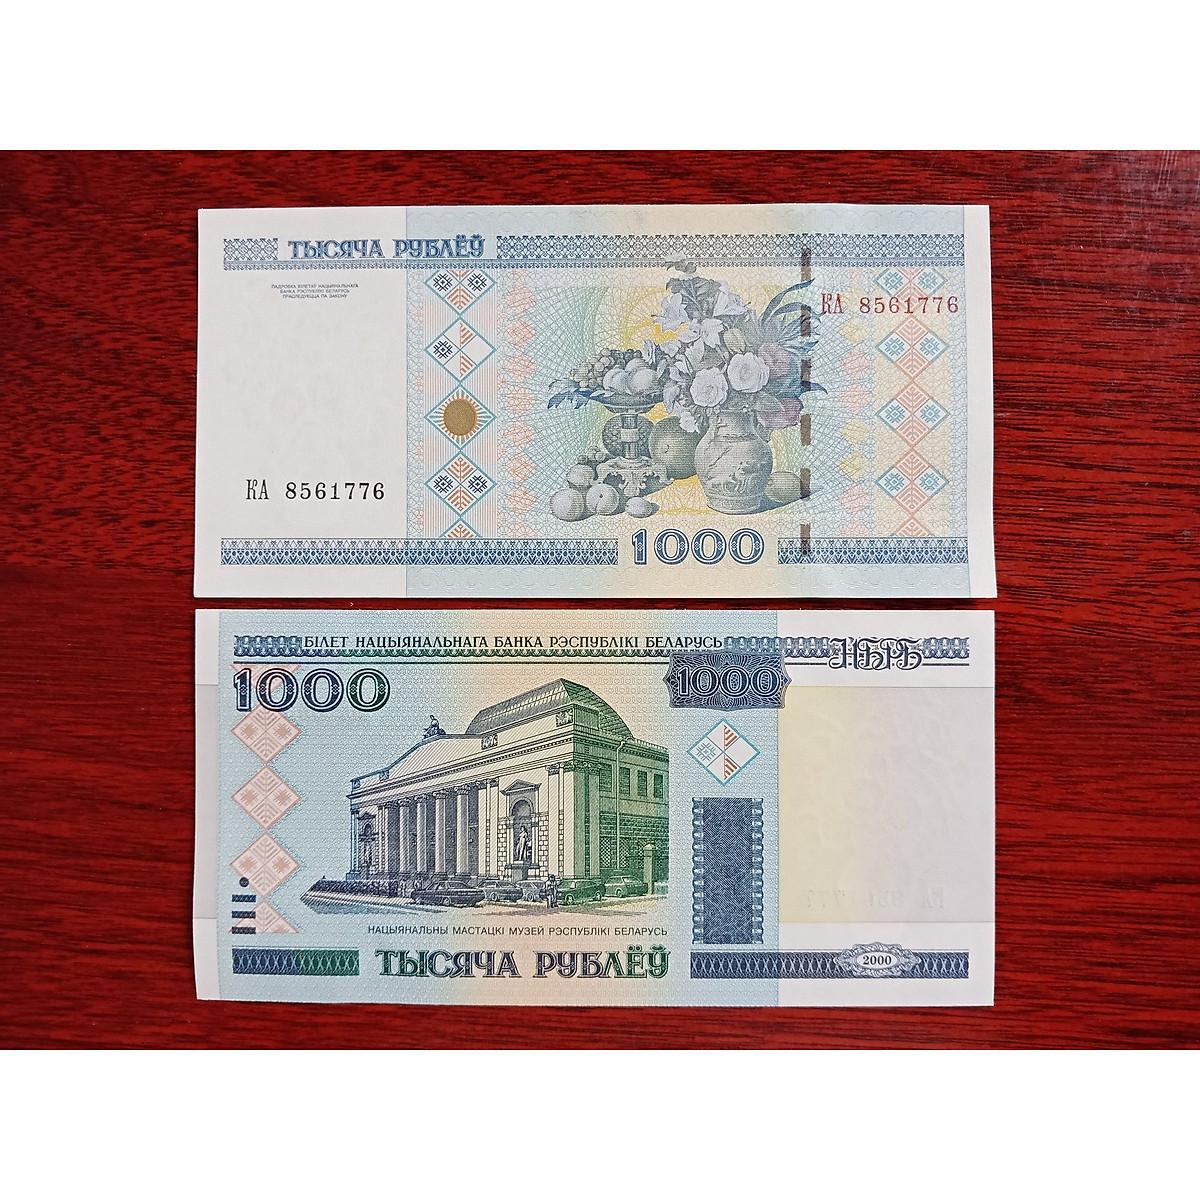 Tờ tiền cổ Belarus 1000 Rubles sưu tầm